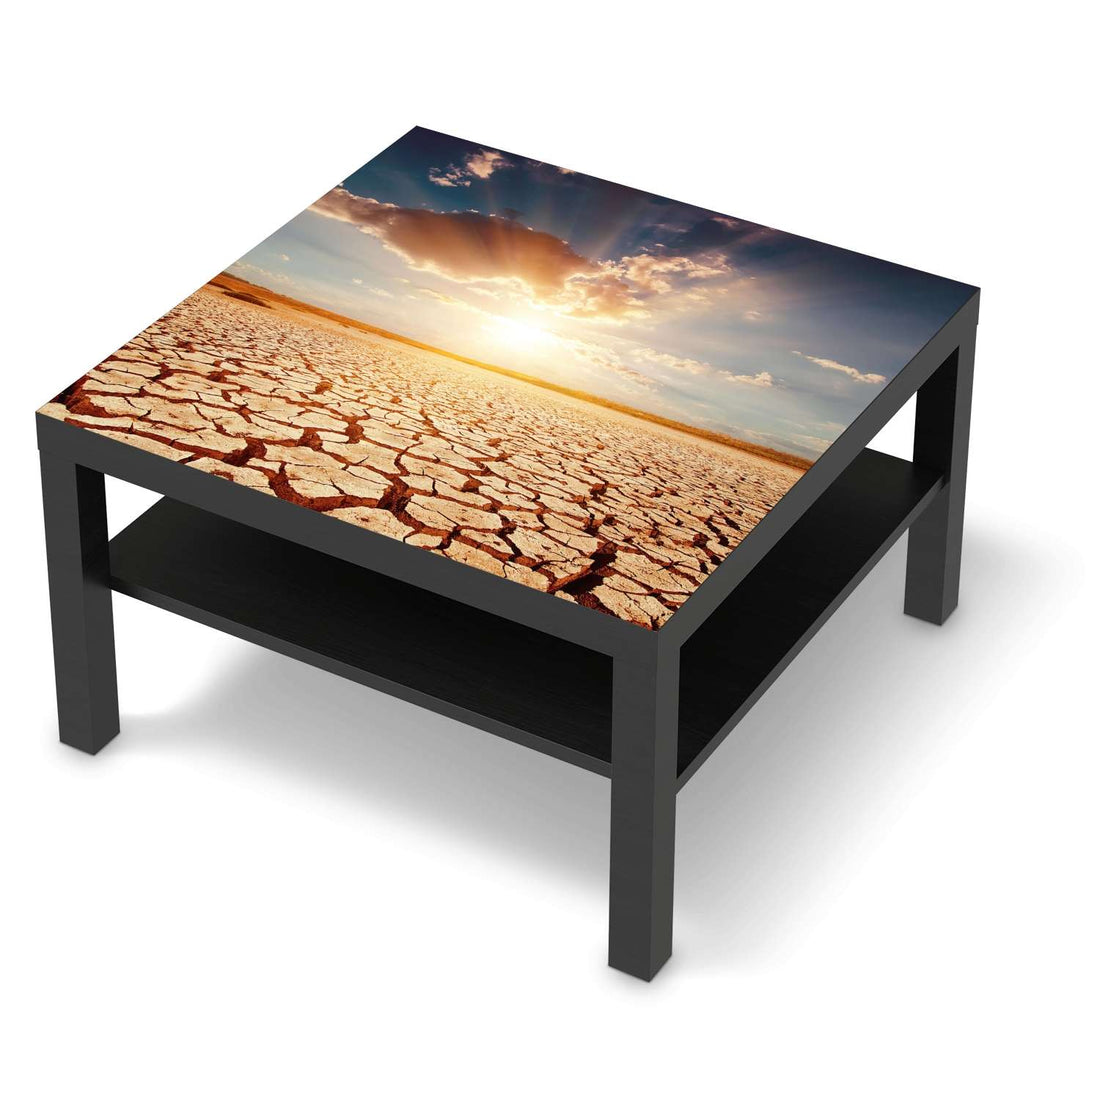 Selbstklebende Folie Savanne - IKEA Lack Tisch 78x78 cm - schwarz